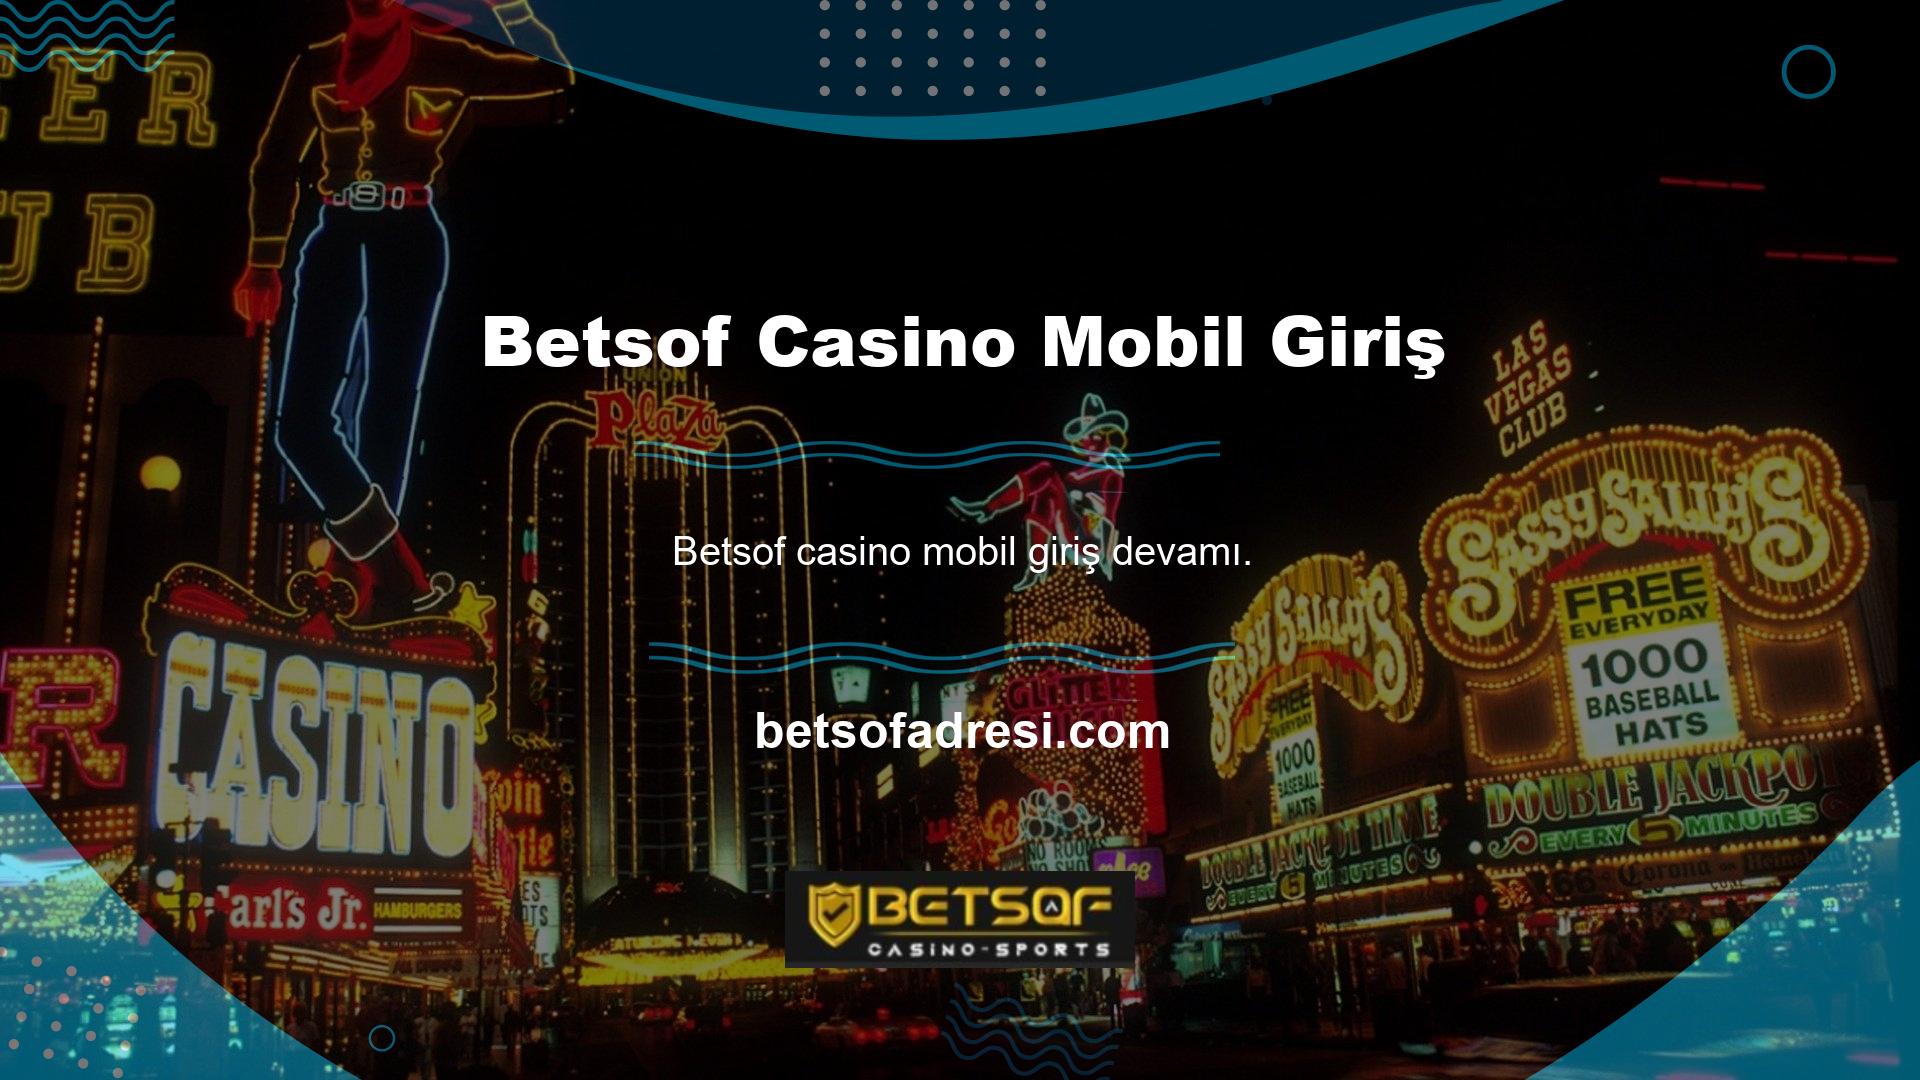 Betsof Casino tüm akıllı cihazlarla uyumludur